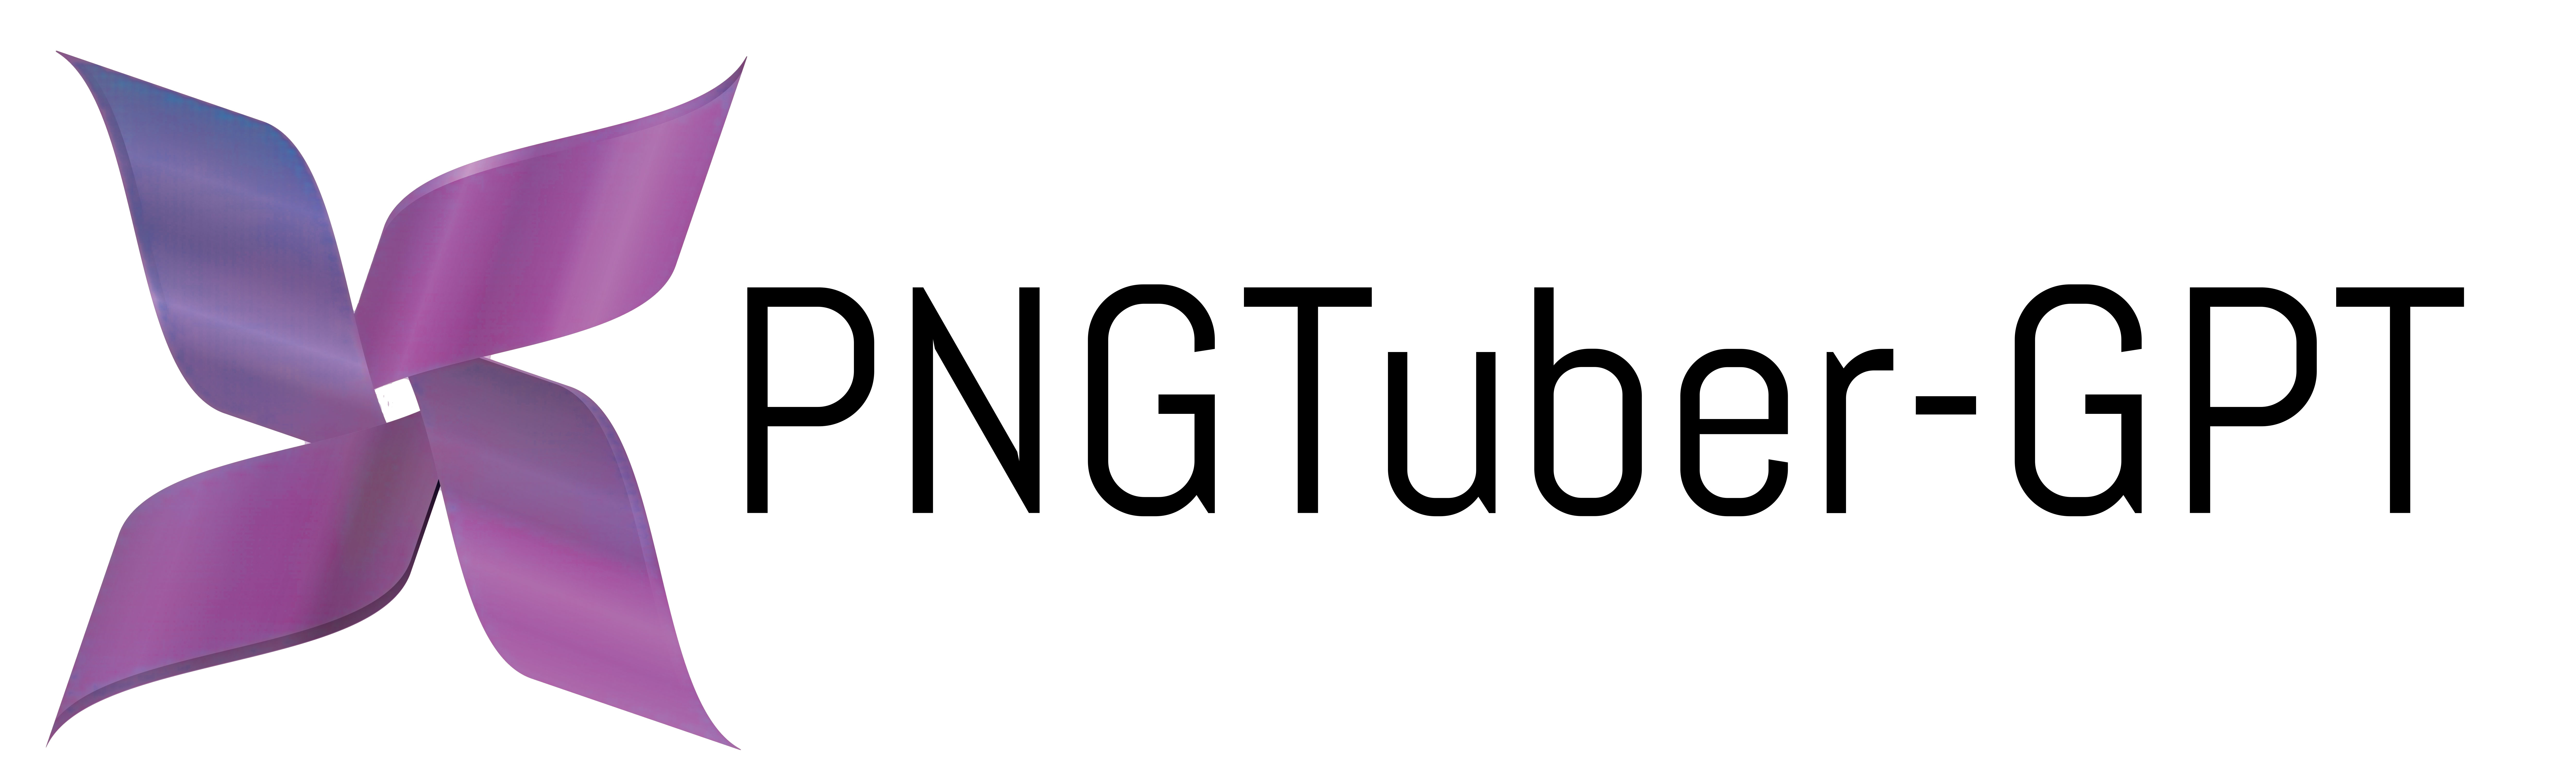 Official PNGTuber-GPT Logo